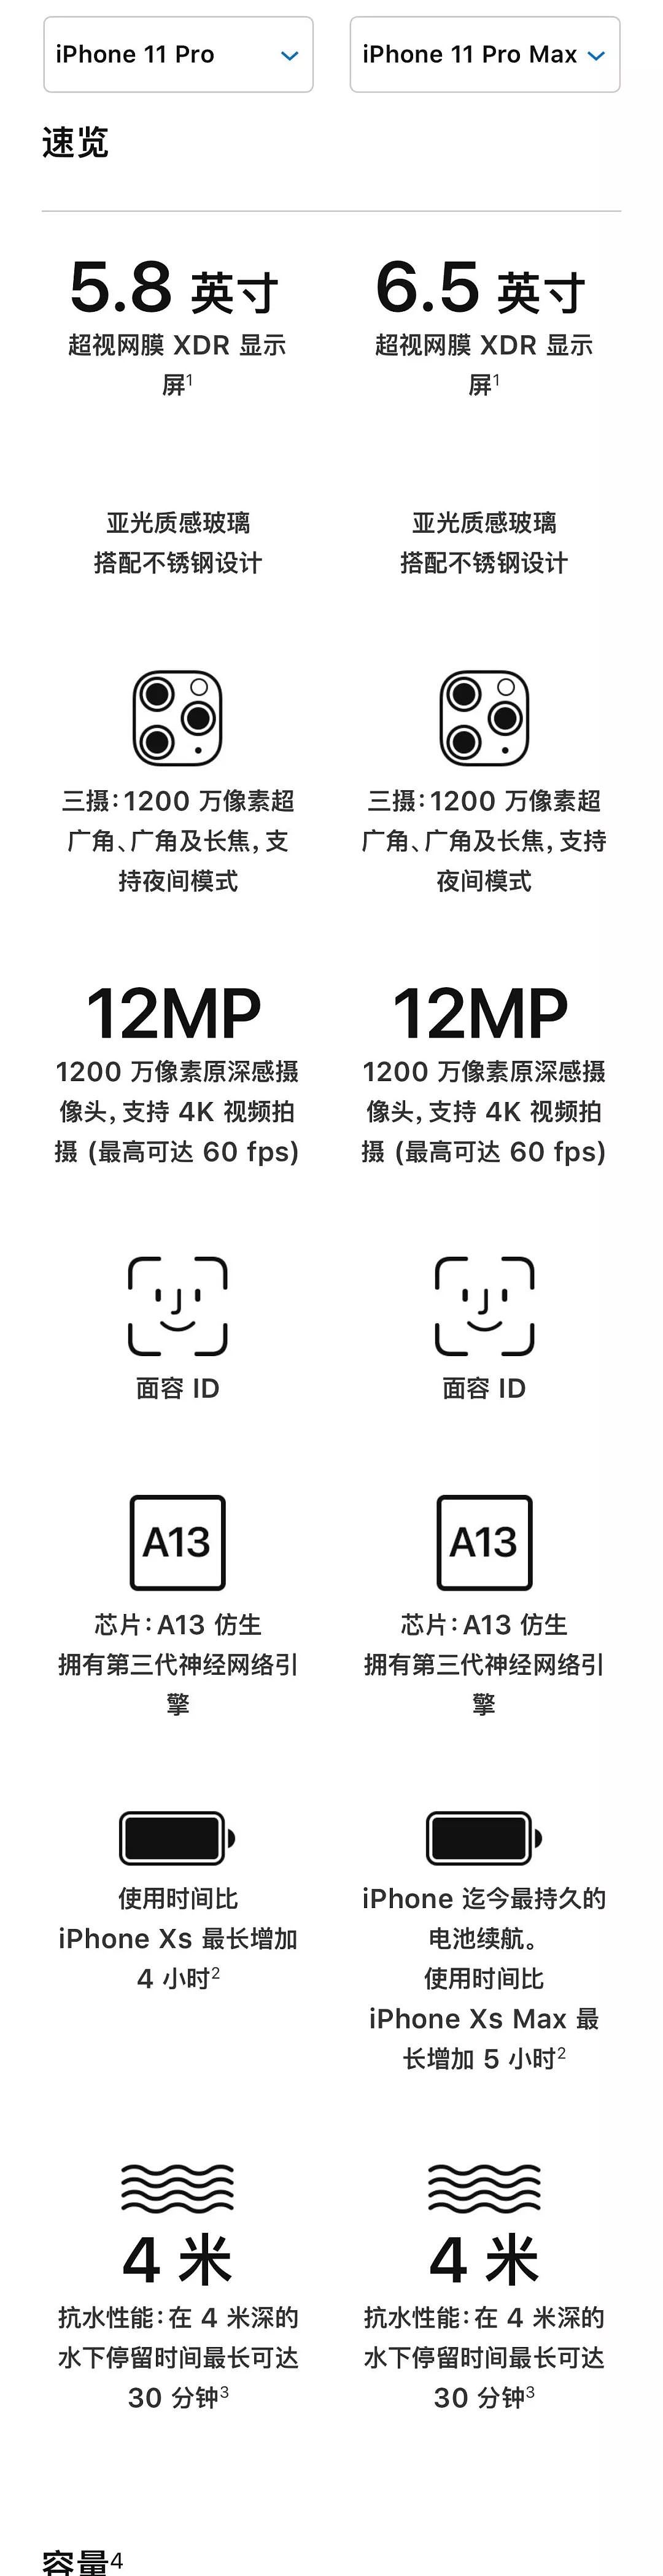 一张图看iPhone 11 Pro和iPhone 11 Pro Max详细规格对比，差价900元差在哪里？ - 1